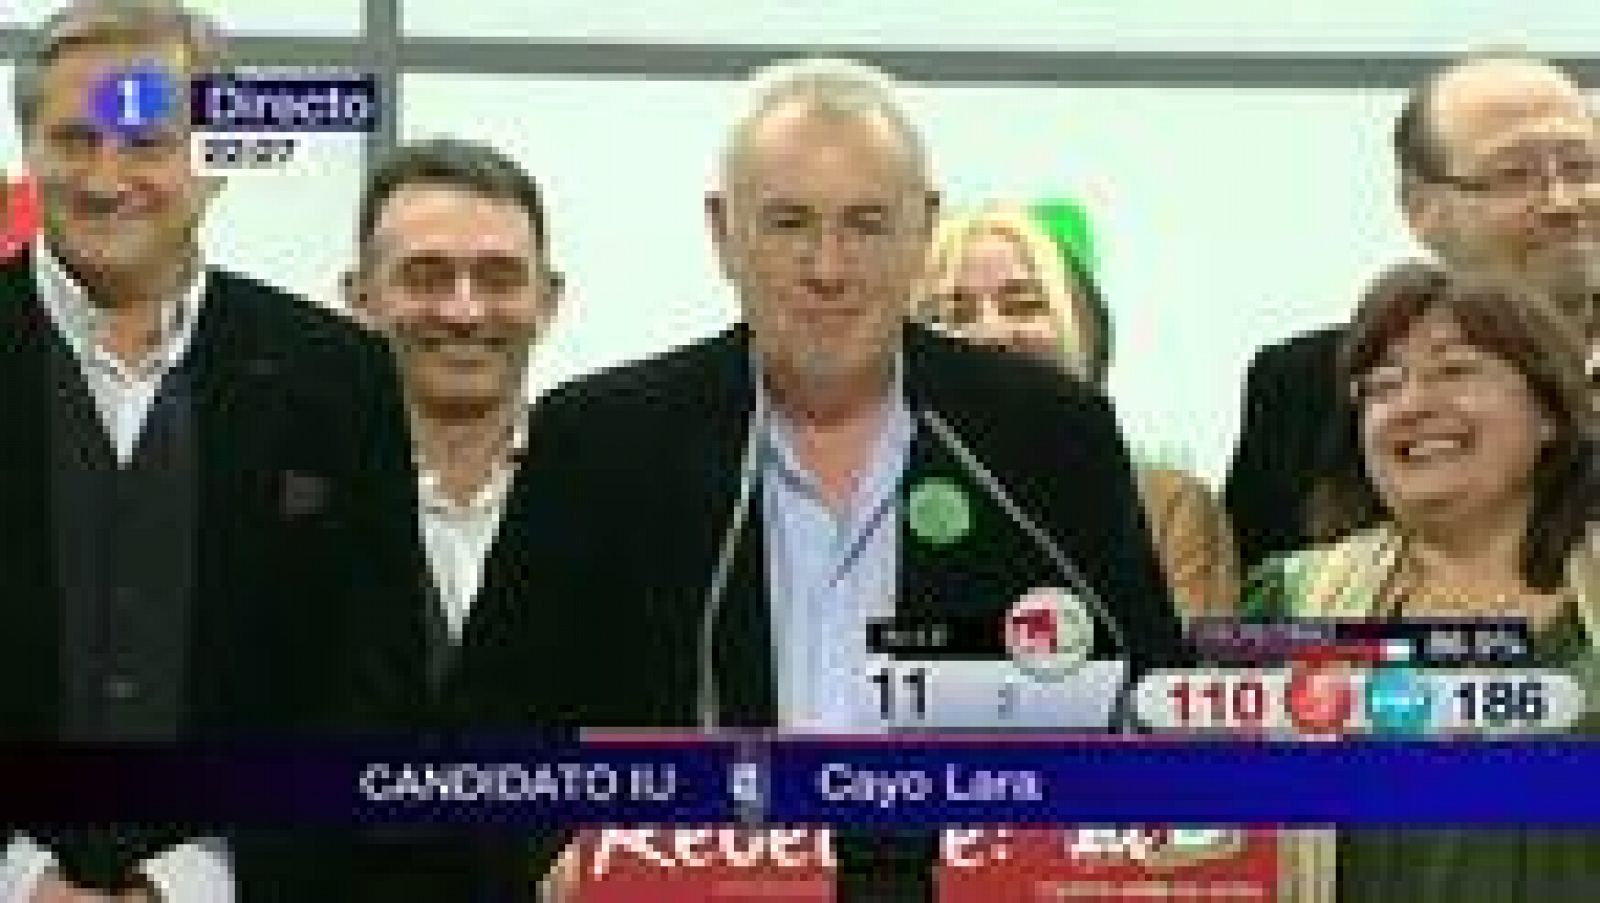  El candidato de IU a la Presidencia del Gobierno, Cayo Lara, muy contento y sonriente por los resultados de las elecciones, que le dan once escaños a la federación -aún datos provisionales- se ha comprometido con todos los ciudadanos que le han apoyado a no "defraudarles" ni "mentirles"